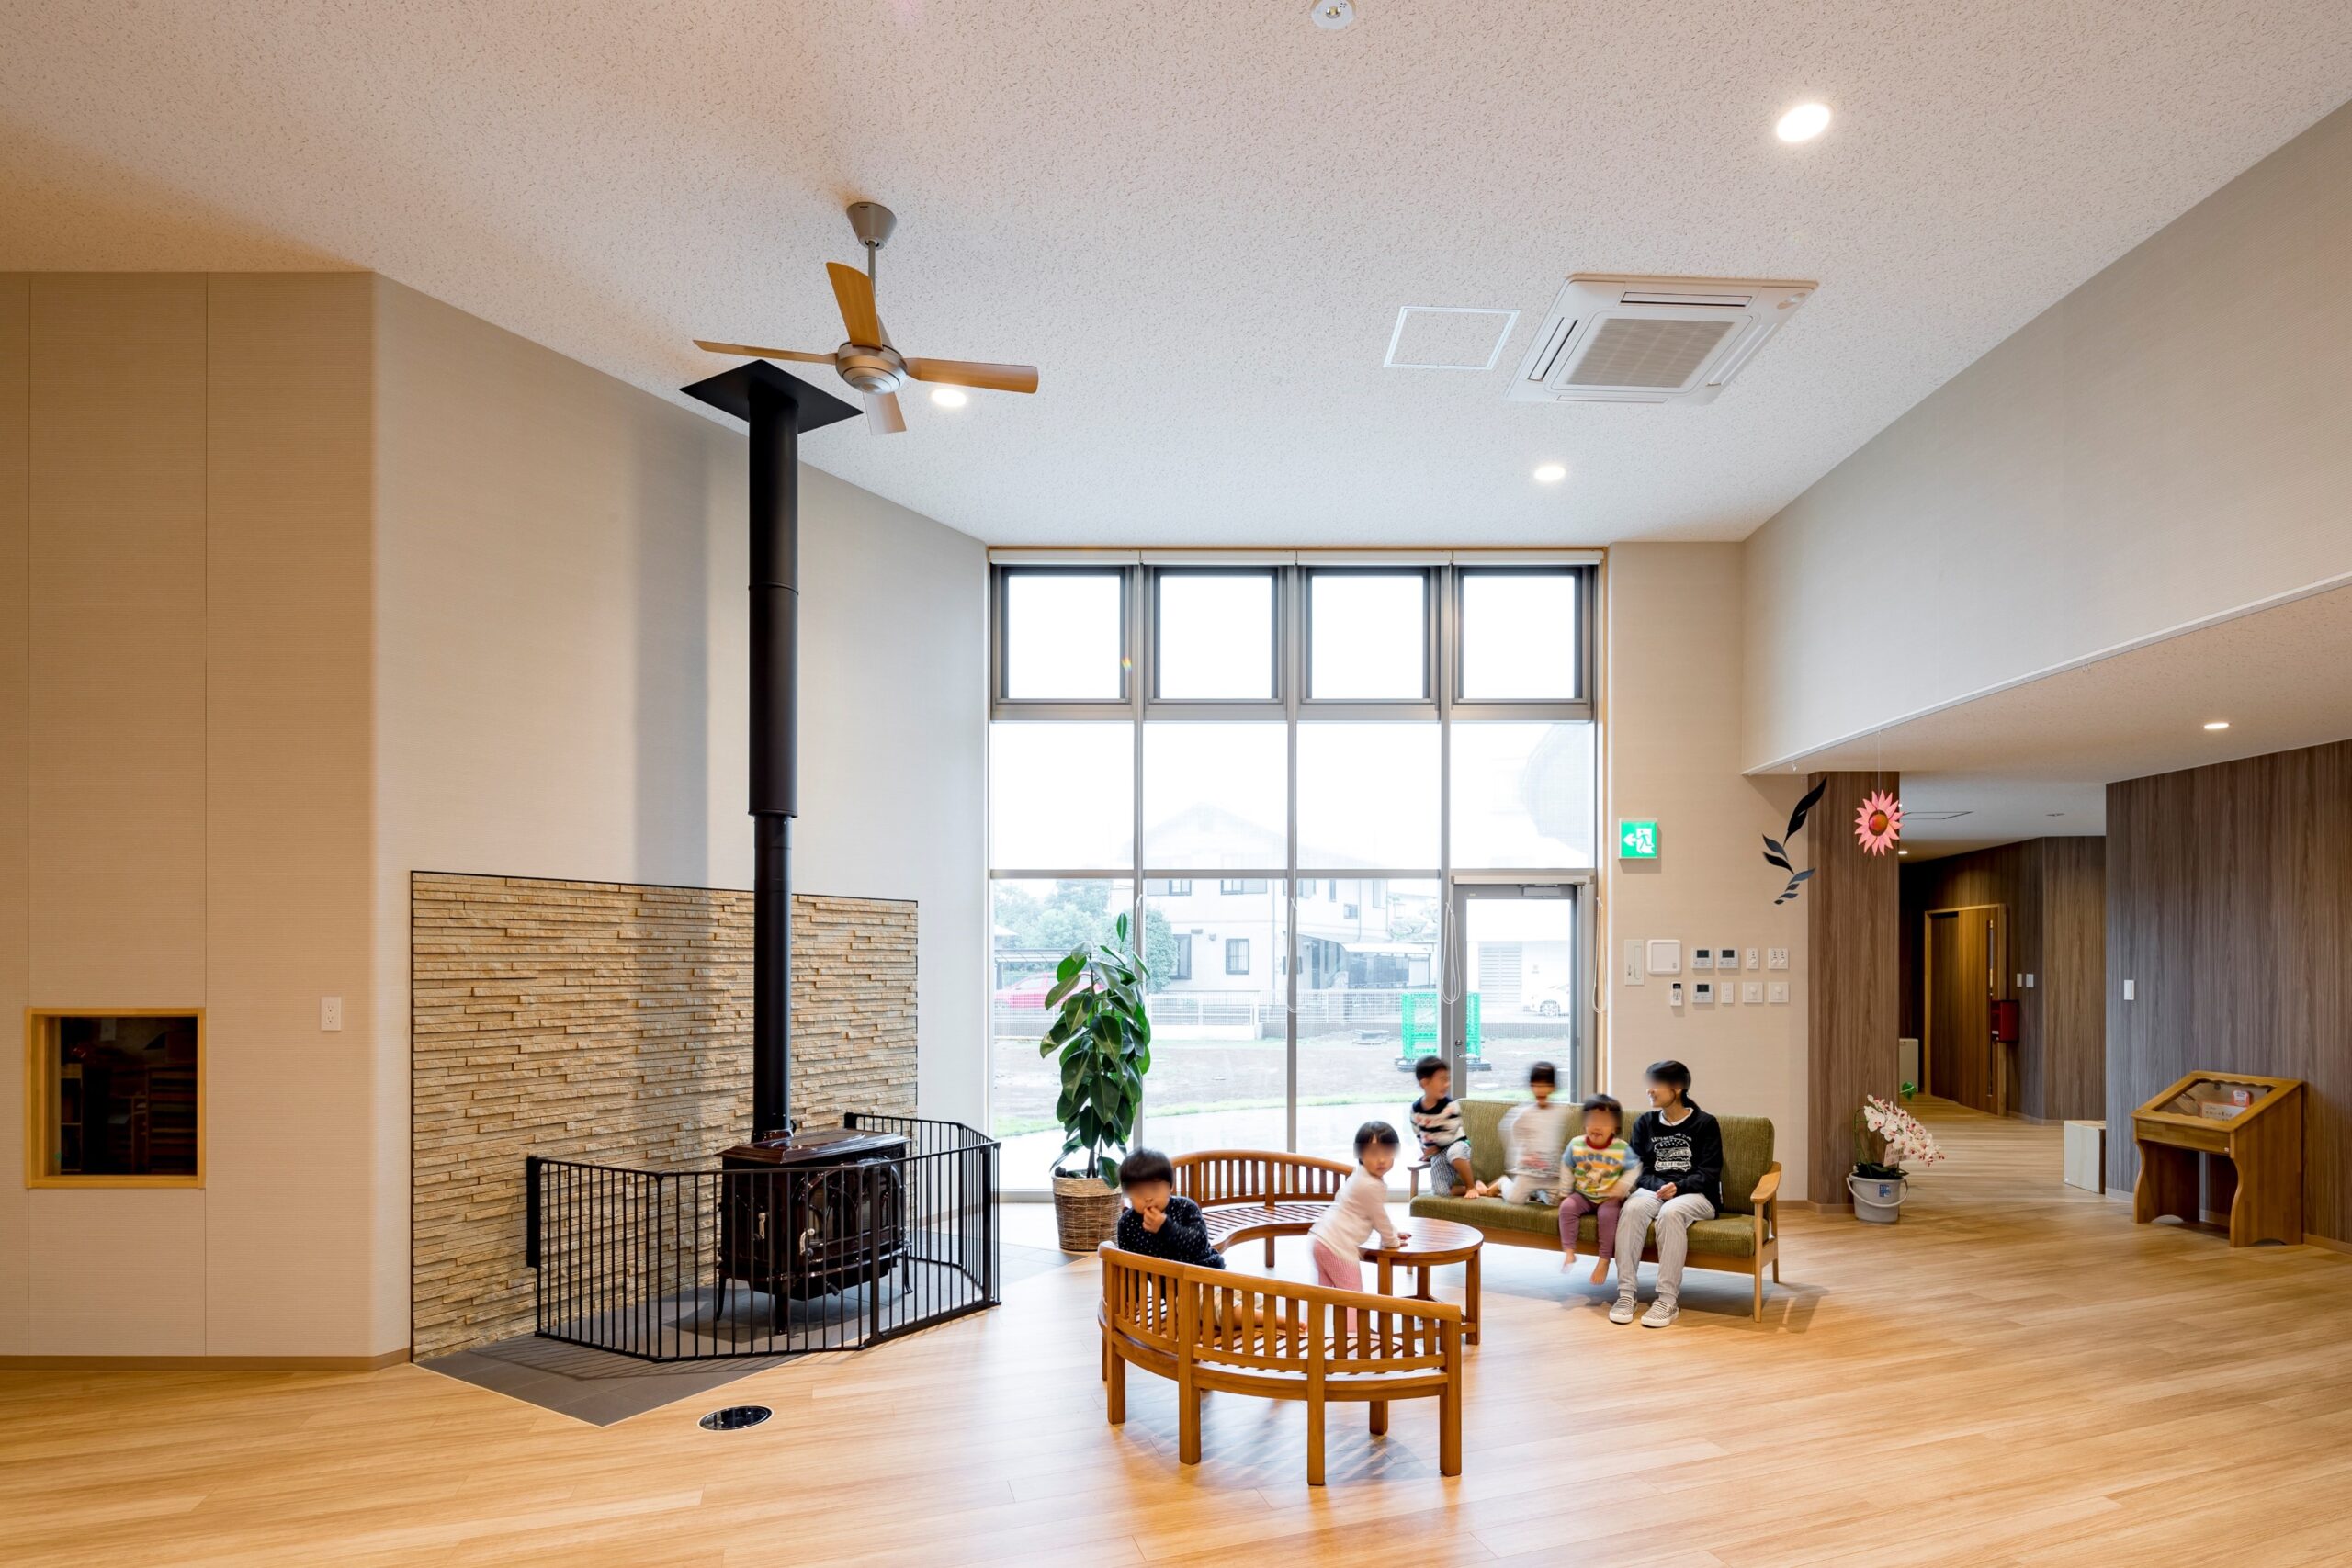 ひとつの部屋で実現する異年齢保育@静岡県の認定こども園１